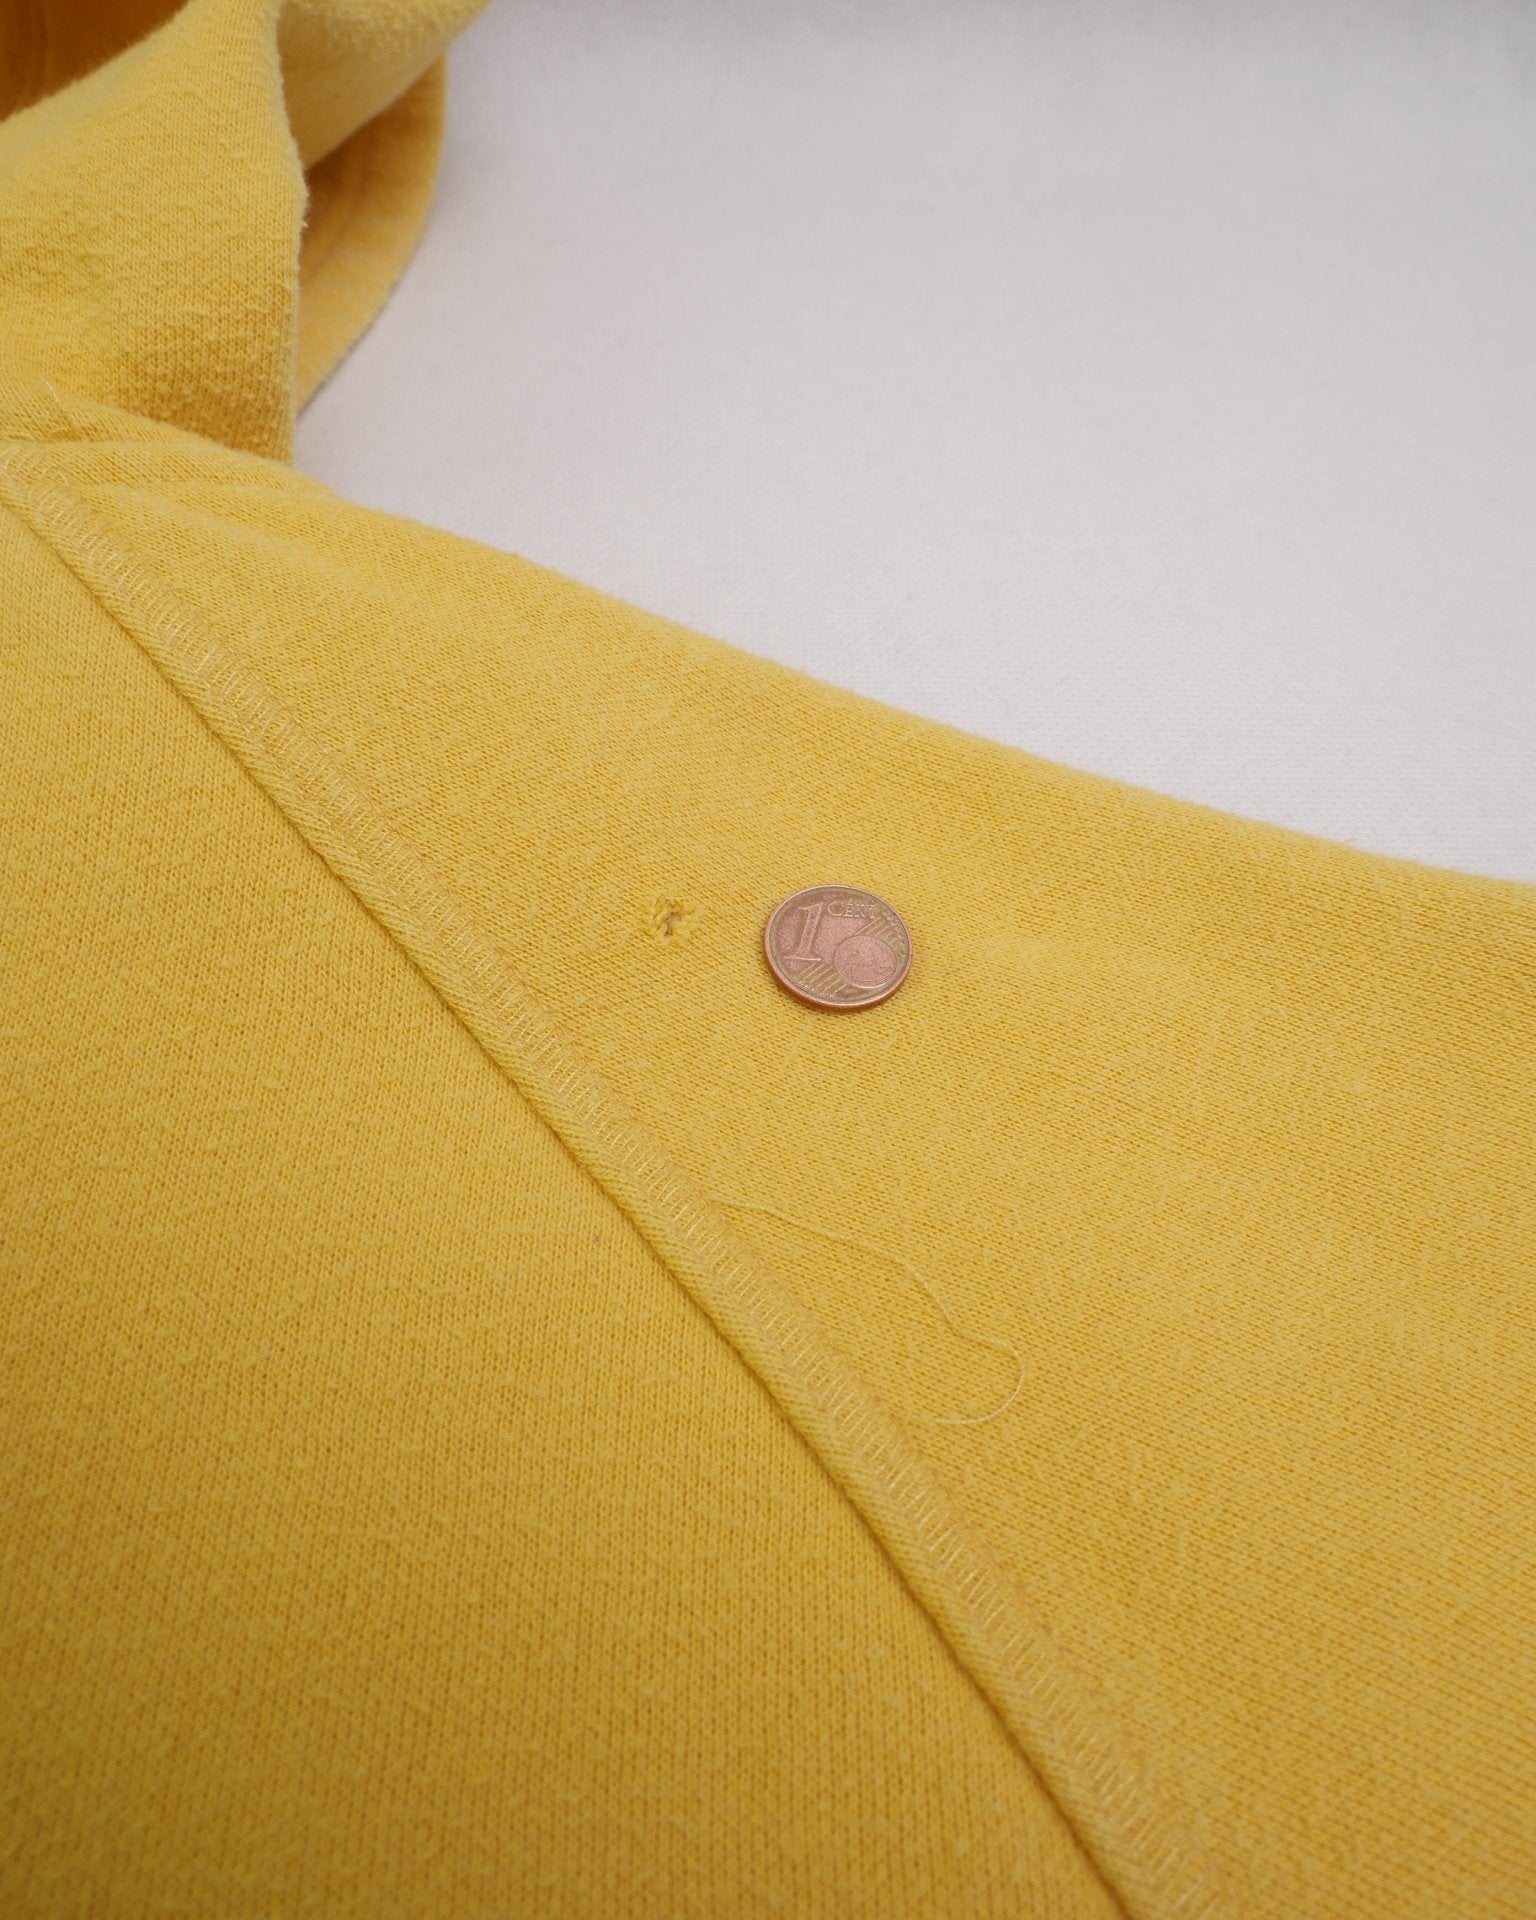 Nike embroidered Logo yellow Zip Hoodie - Peeces